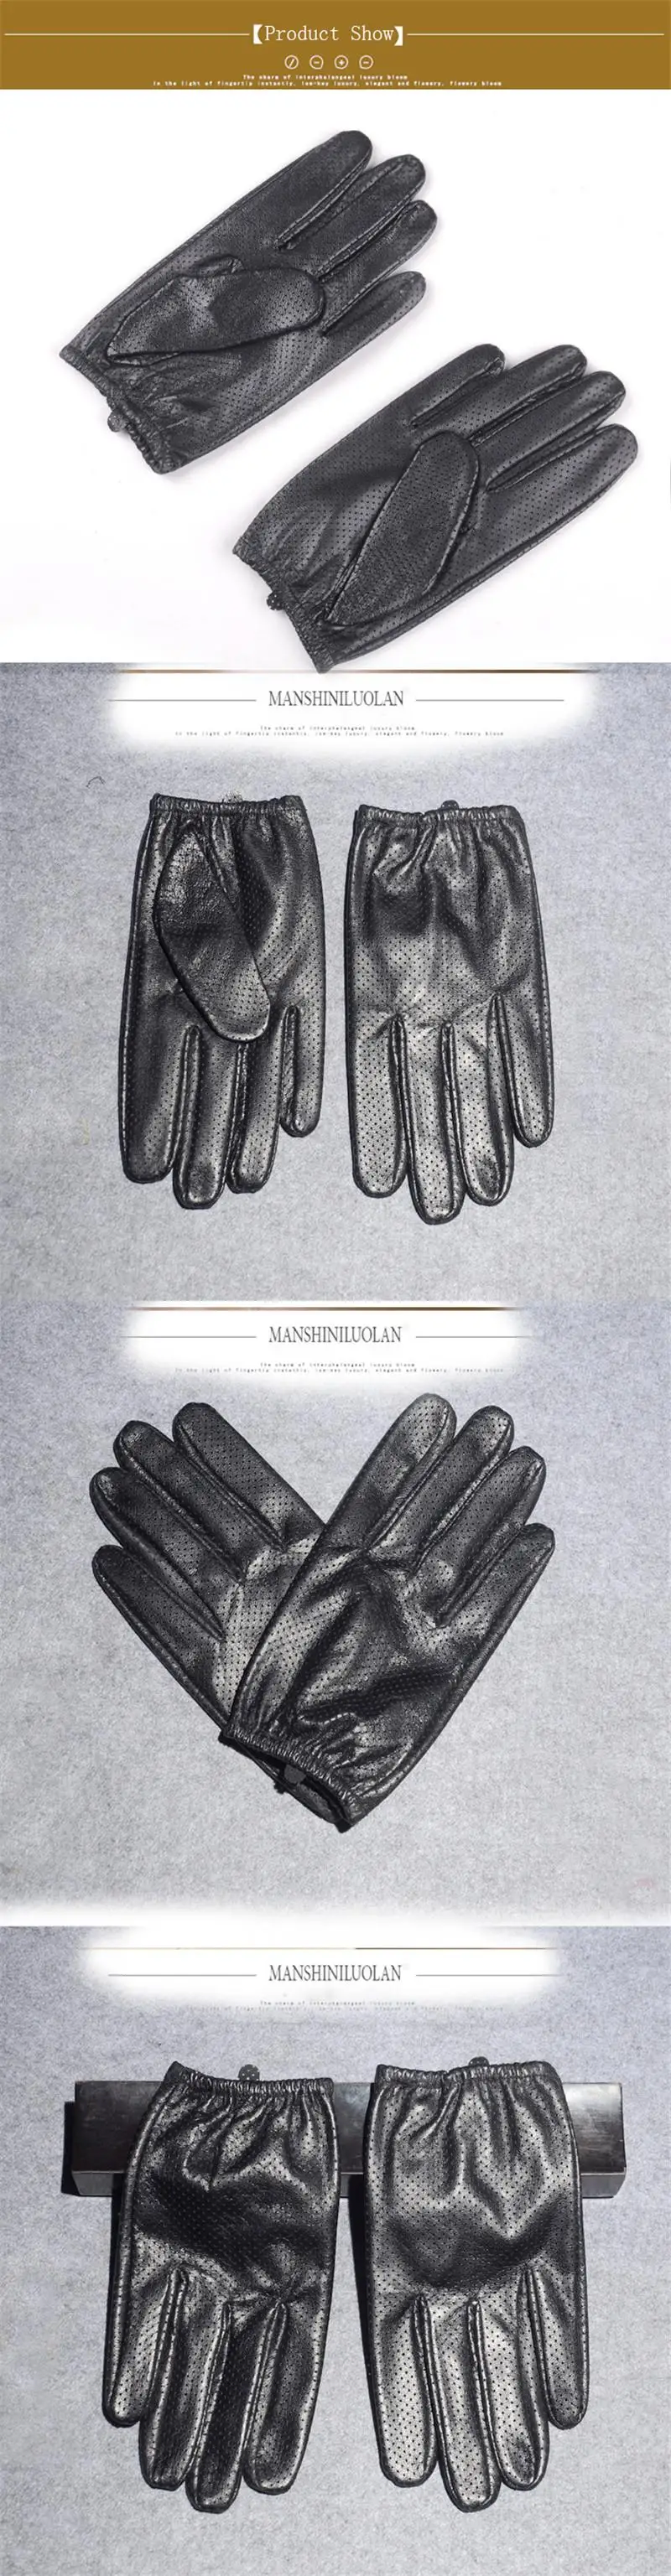 Длинные Хранитель Мода 2018 Для мужчин перчатки наручные палец водительские перчатки Твердые взрослых варежки из натуральной кожи Tacticos G219